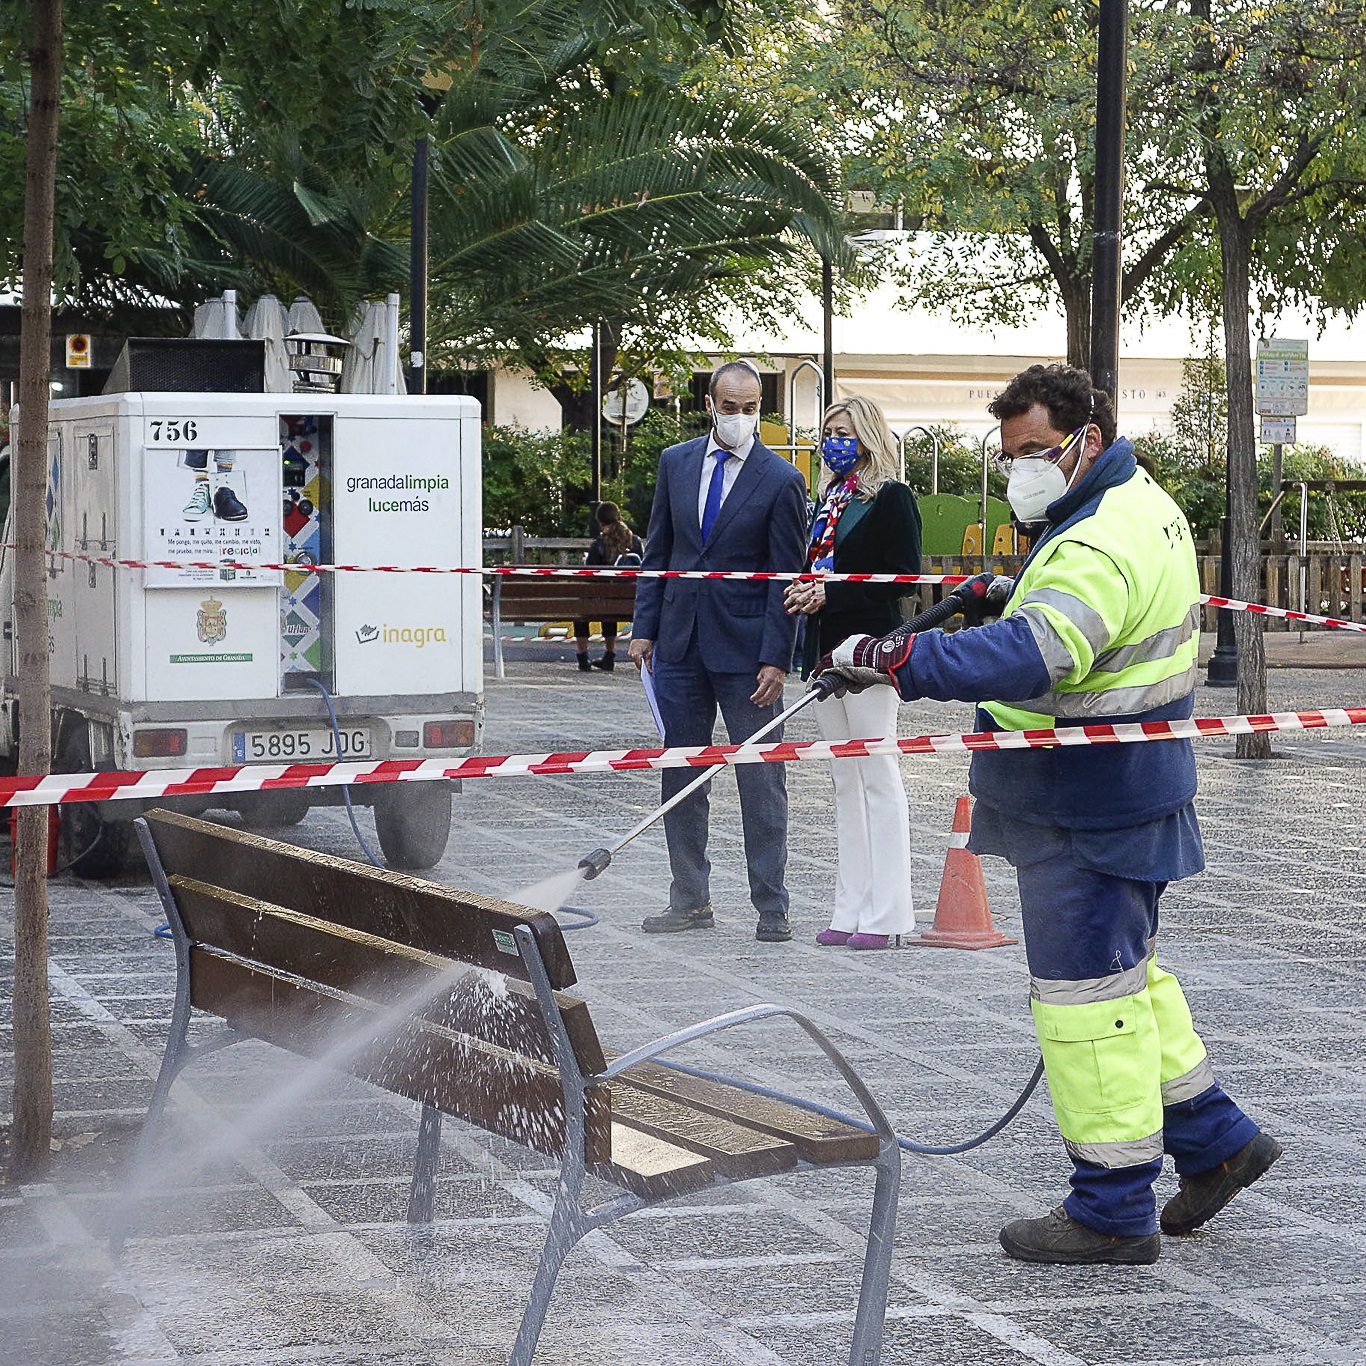 ©Ayto.Granada: El Ayuntamiento refuerza la desinfeccin de las calles con 15 vehculos de Inagra que esparcirn agua y leja en zonas especialmente sensibles   